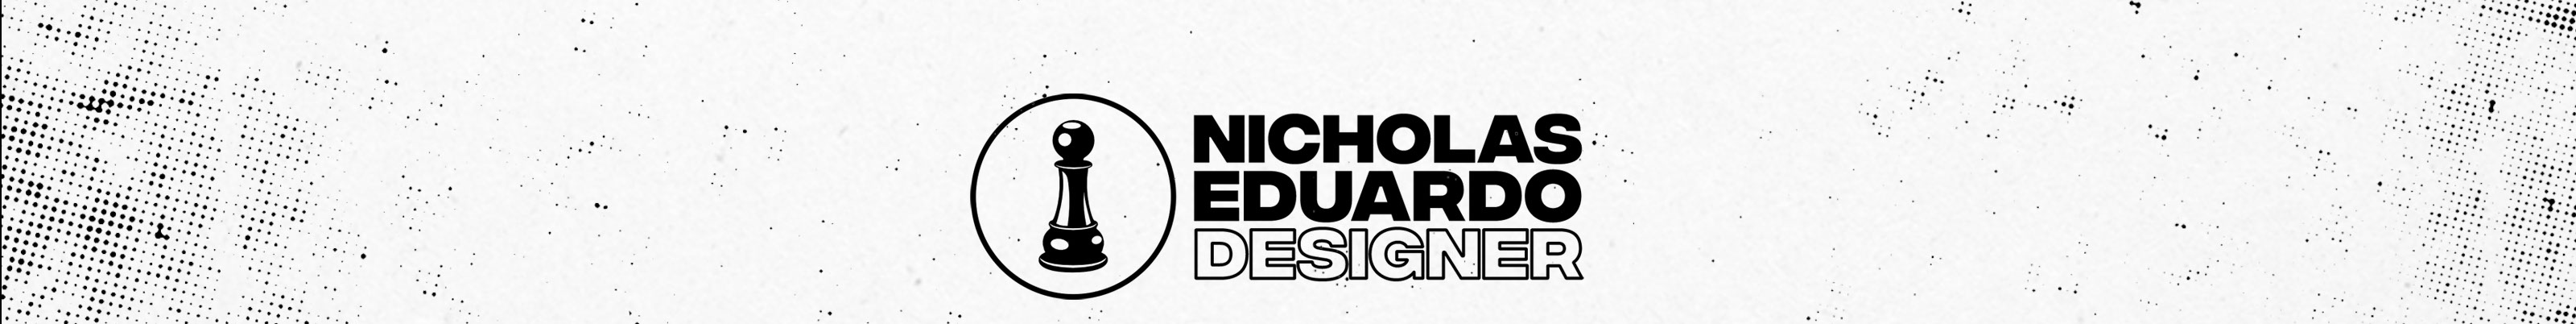 Баннер профиля Nicholas Eduardo